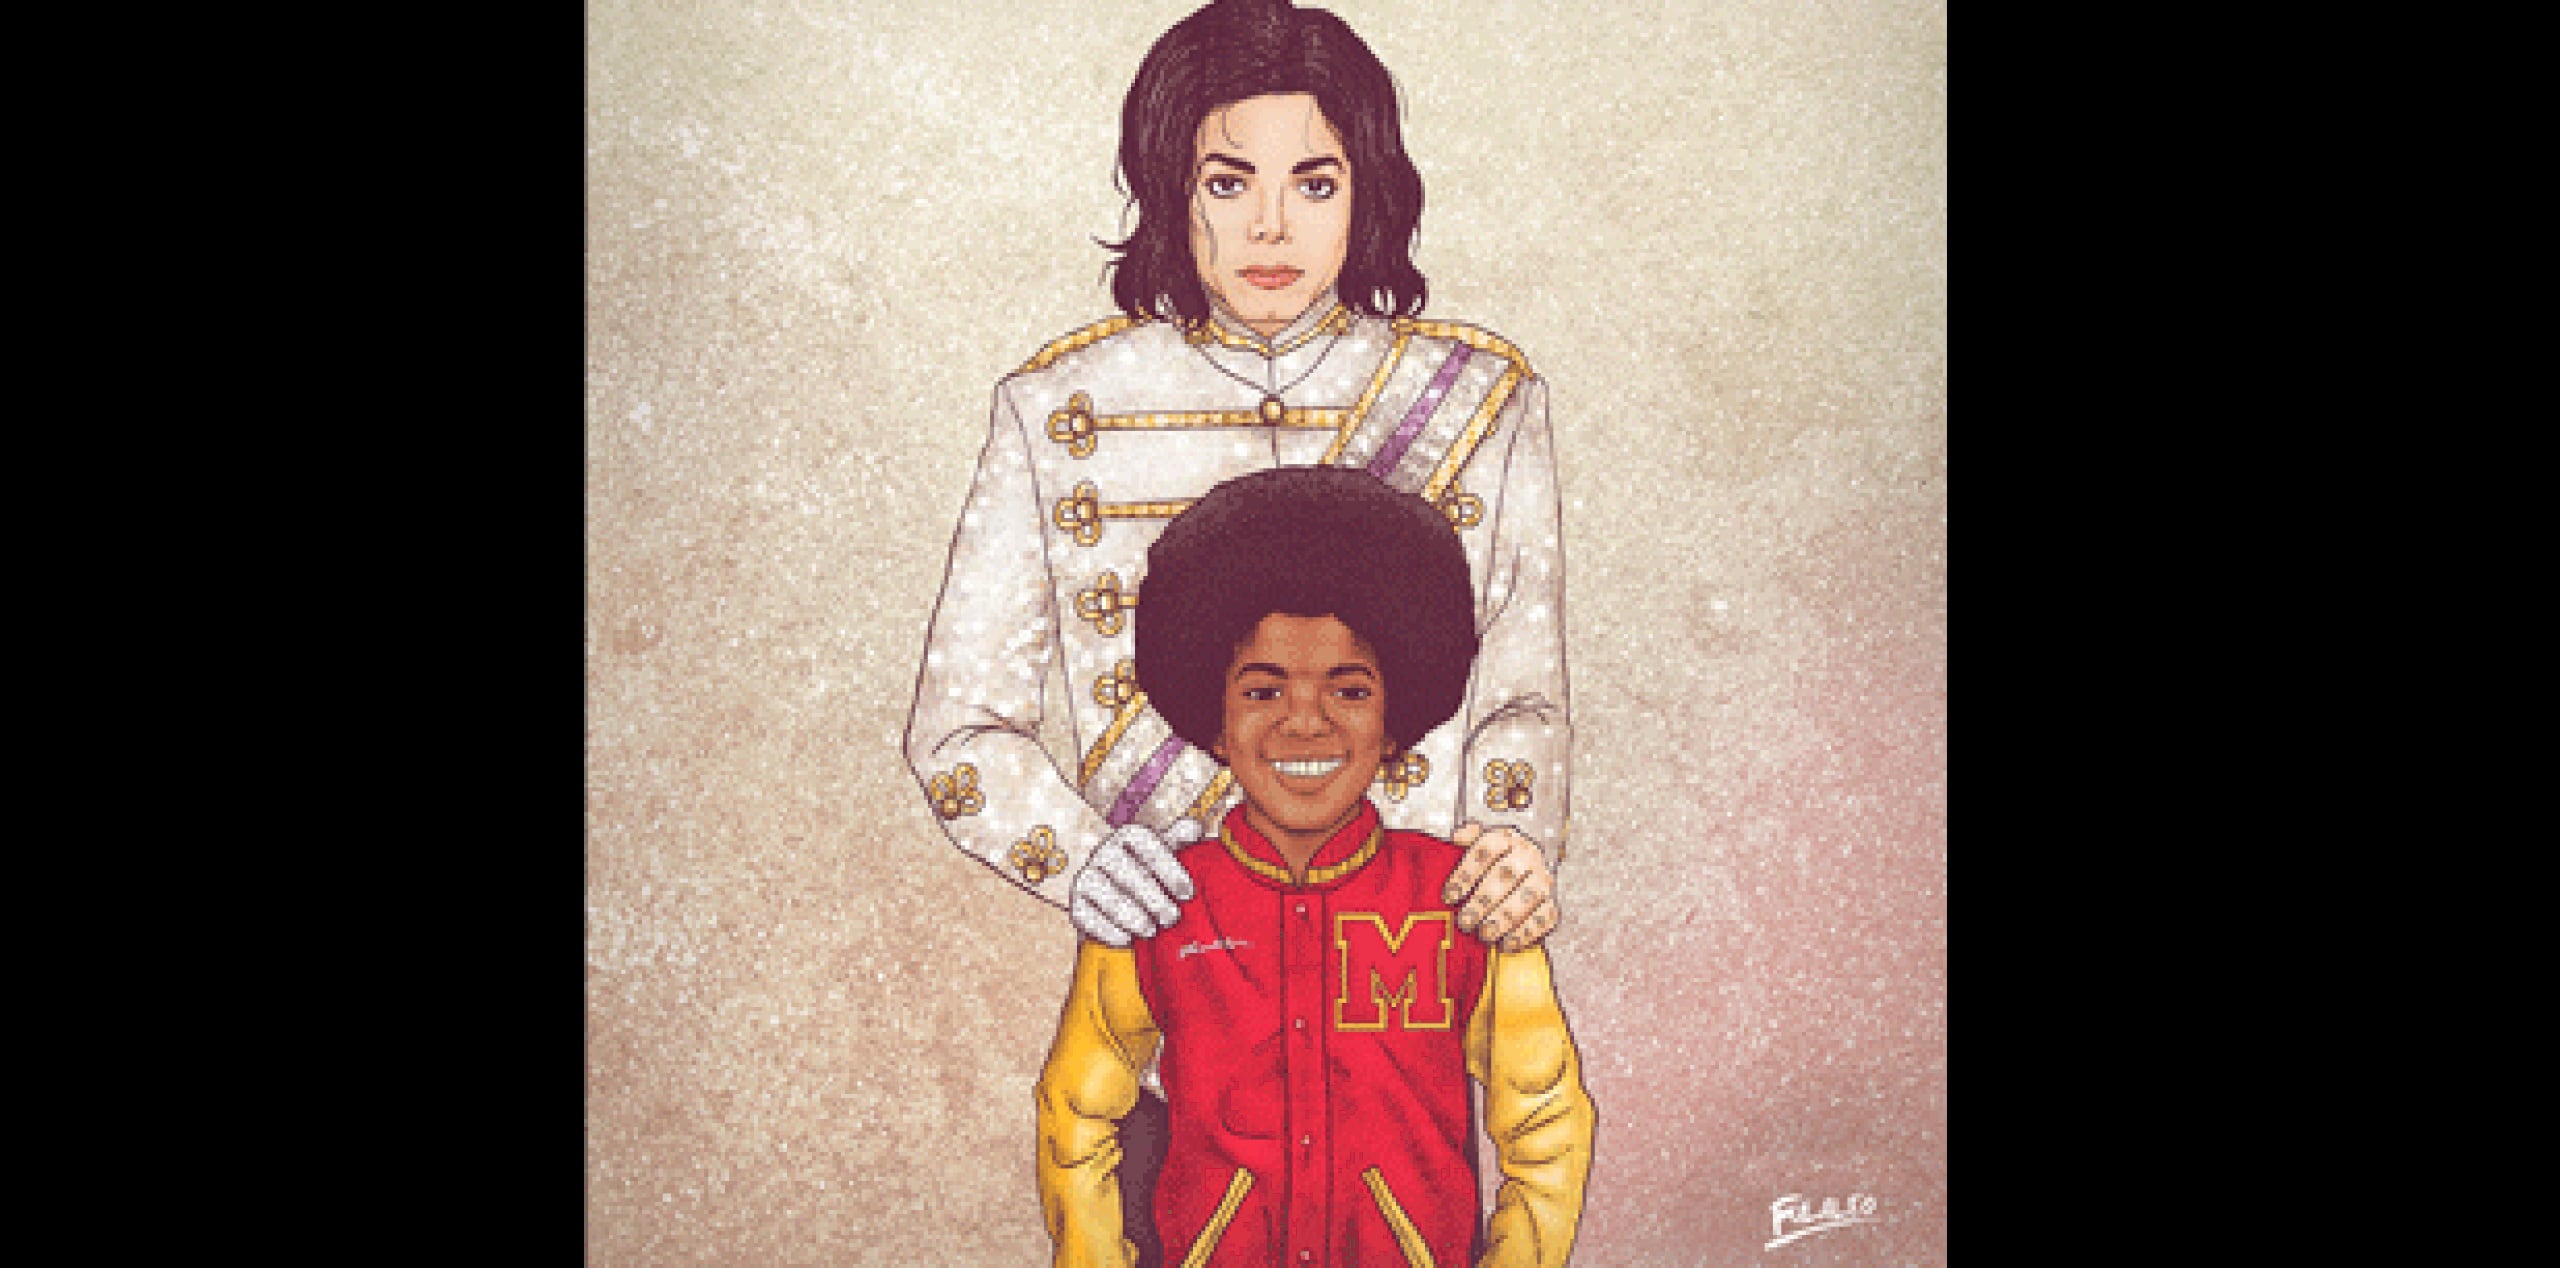 Michael Jackson fue representado de esta forma por el artista. (Behance.net)